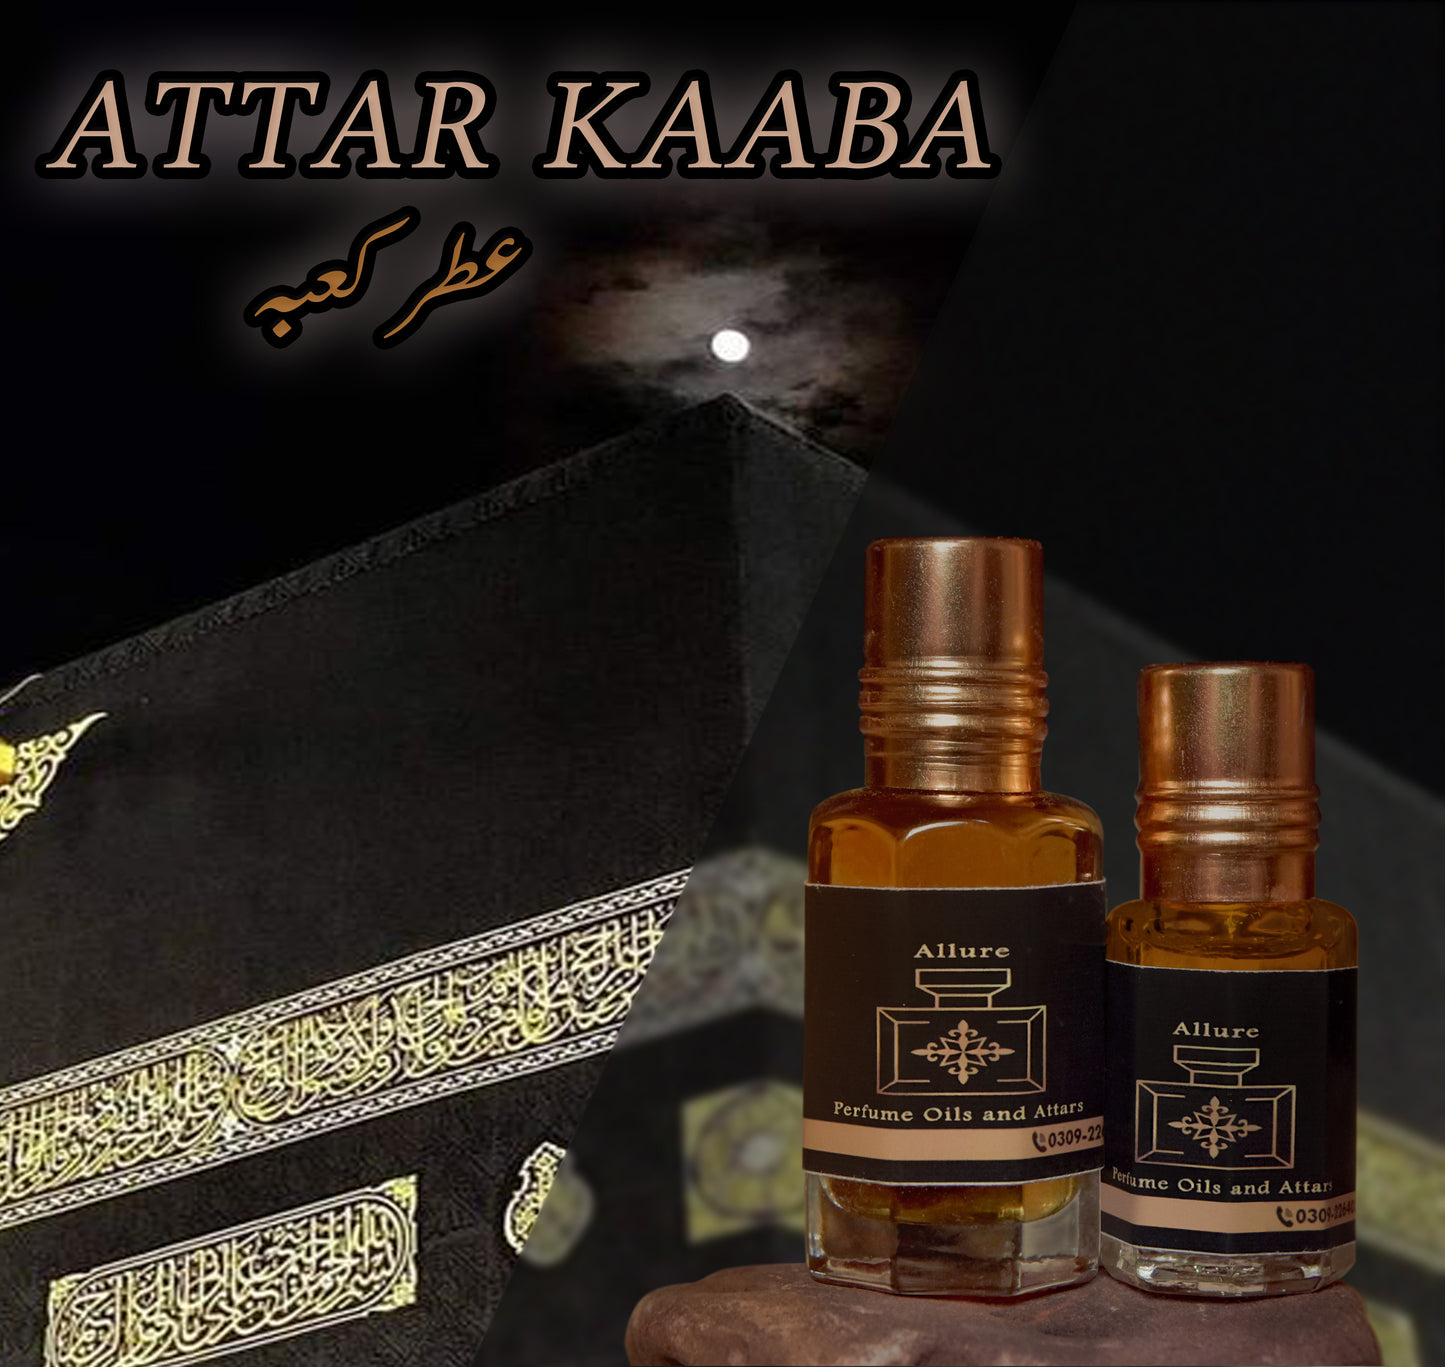 Attar Kaaba attar in high quality